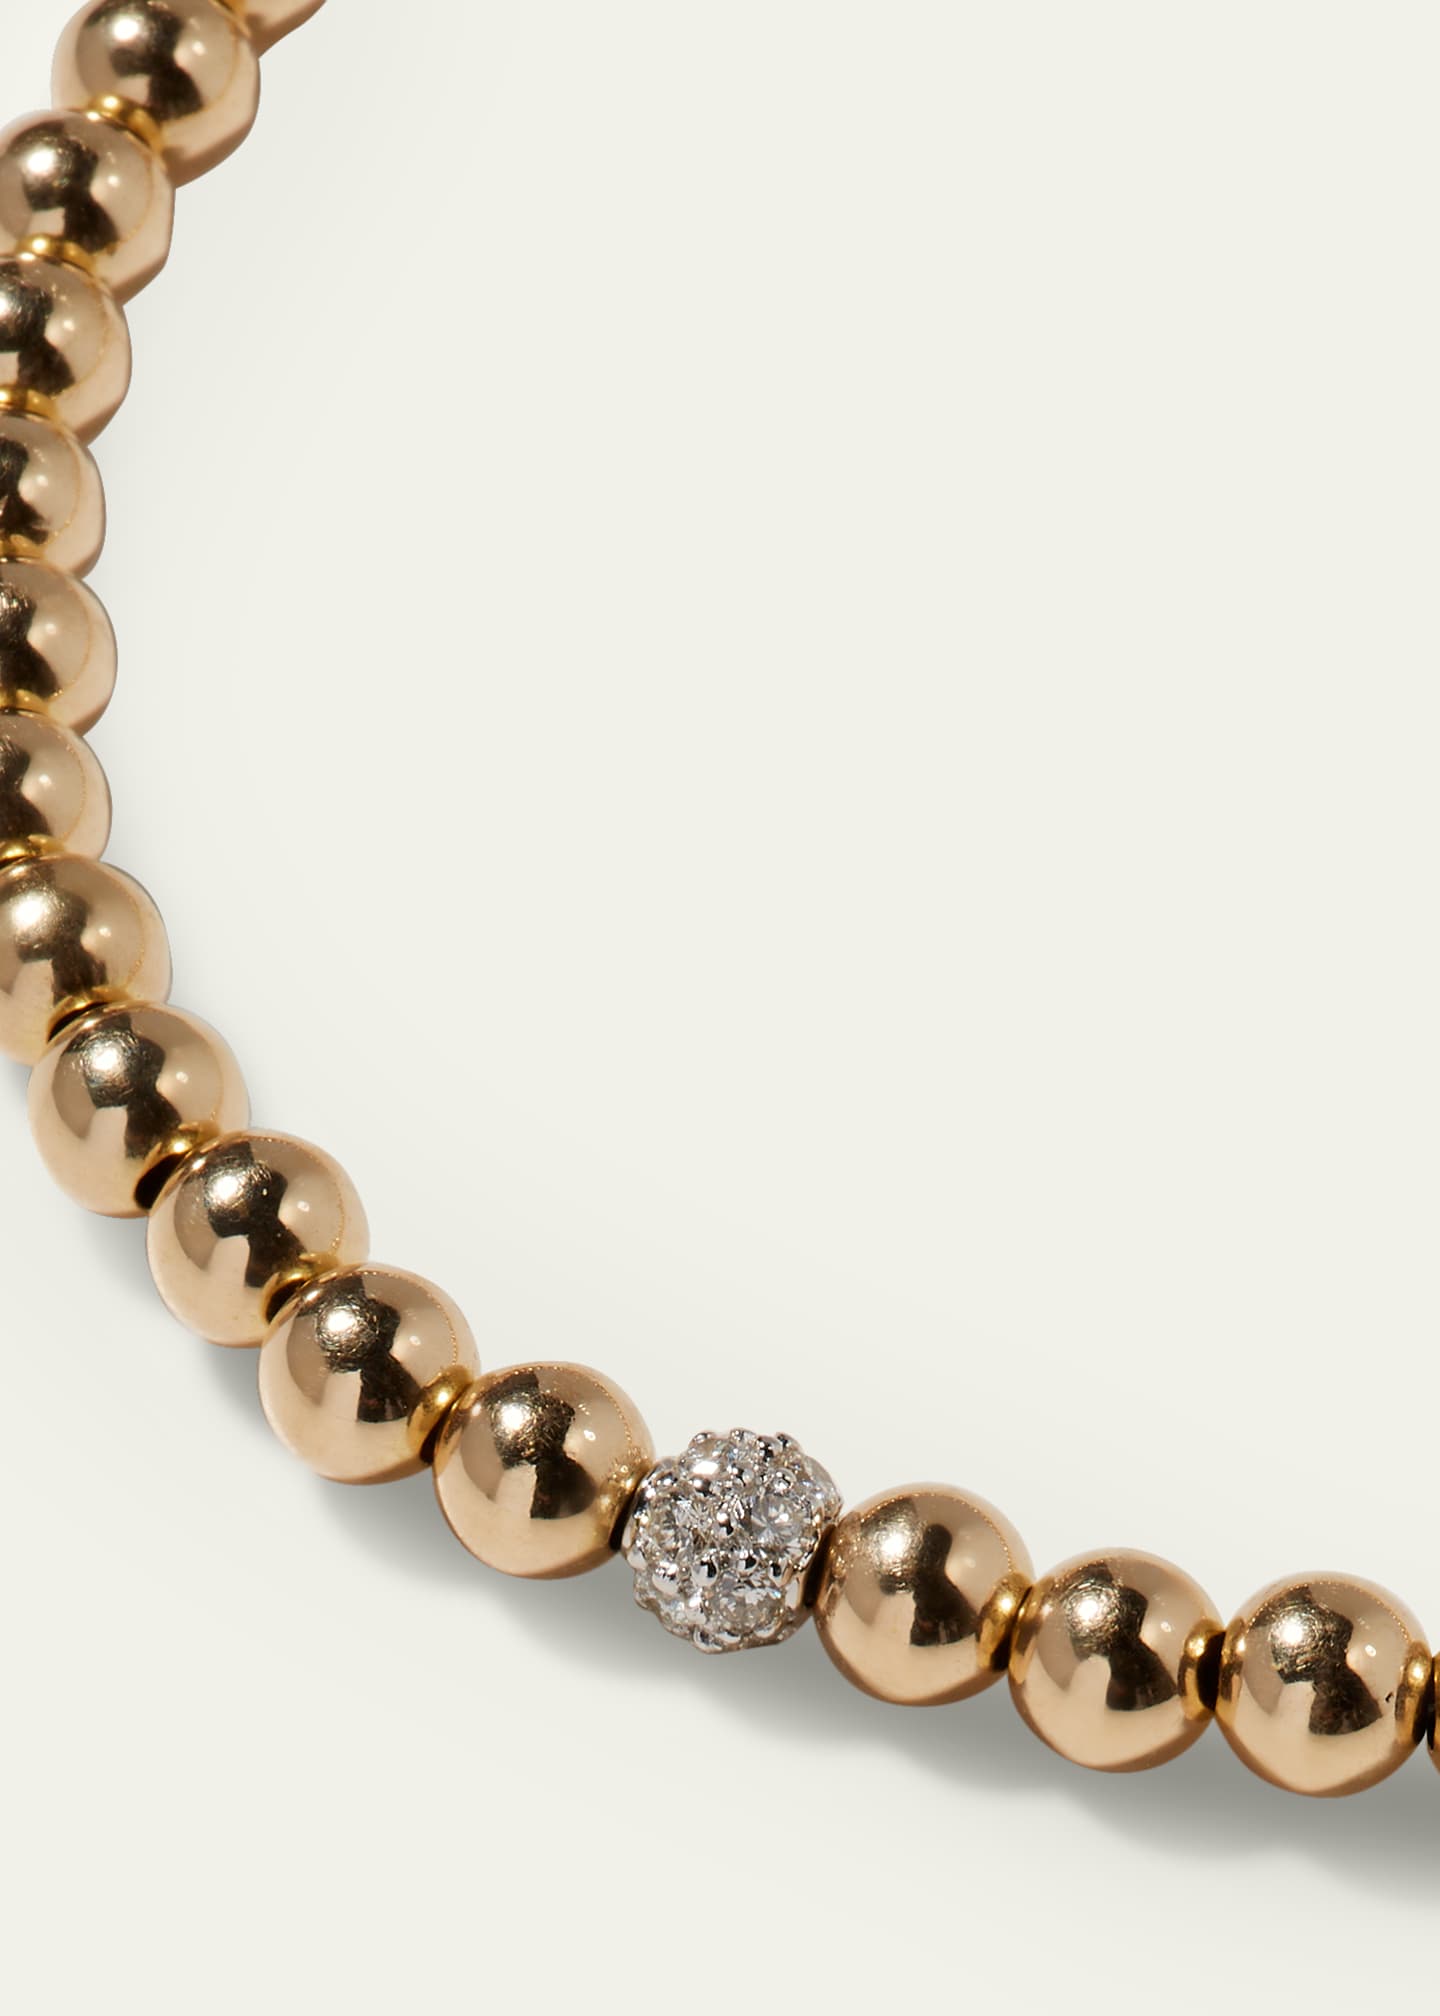 Sydney Evan 14k White Gold Diamond Bead Ball Bracelet Image 3 of 4